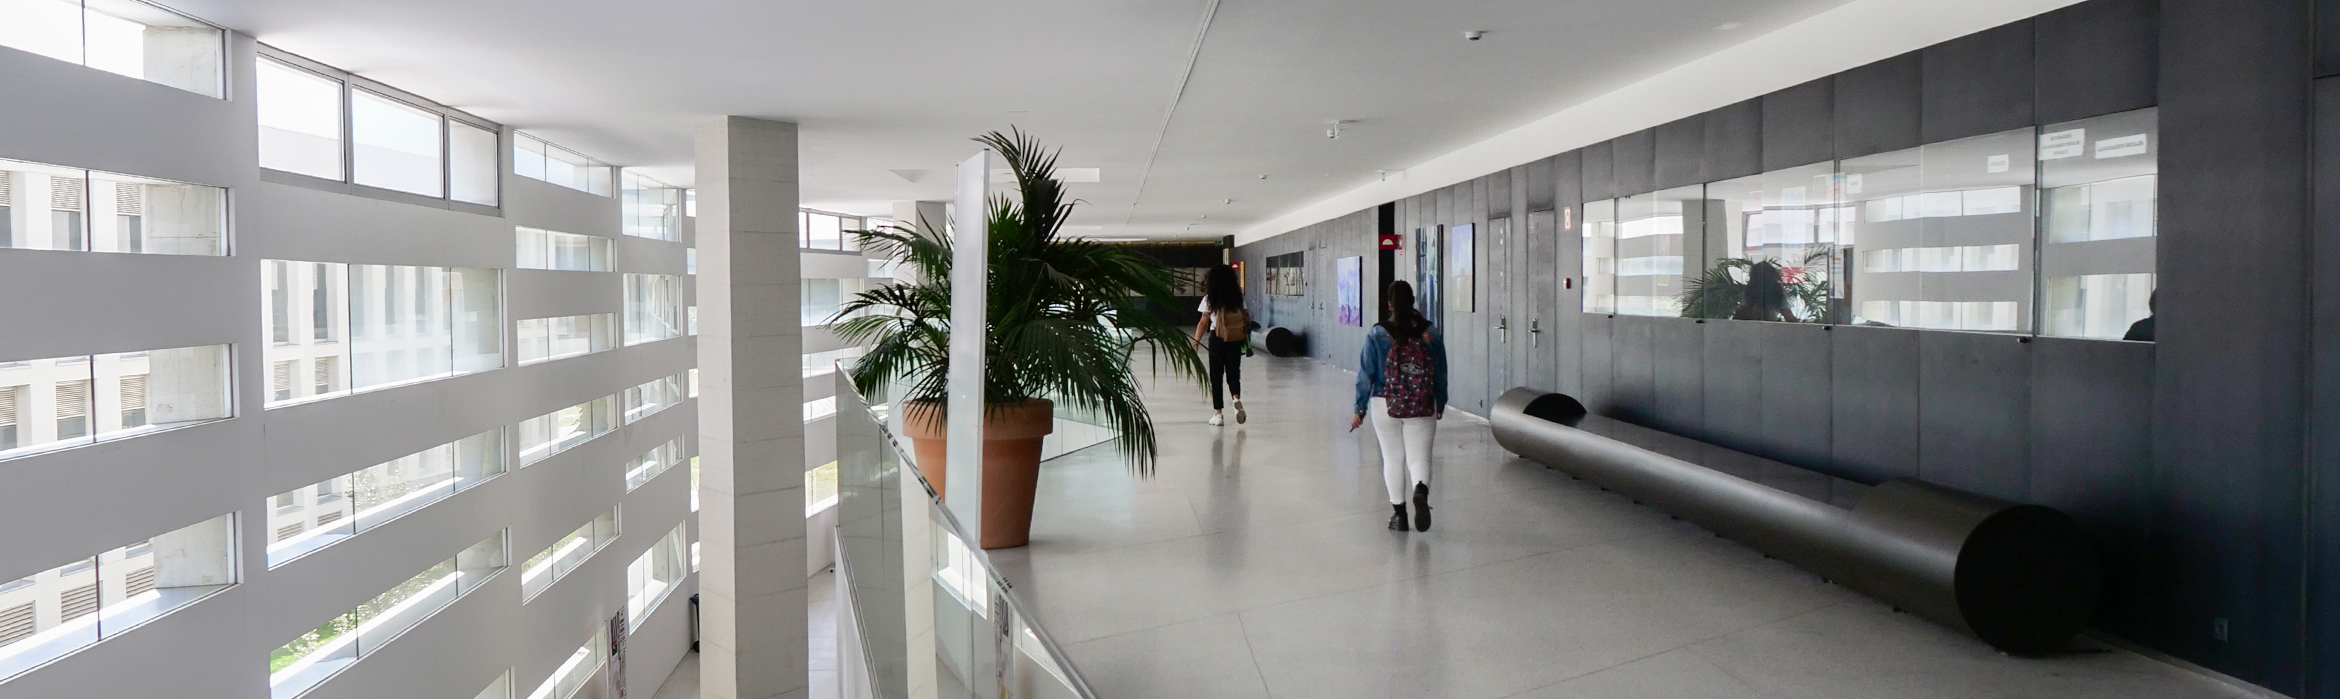 Amplio pasillo con cuatros, macetas y bancos del Campus de Ciencias de la Salud